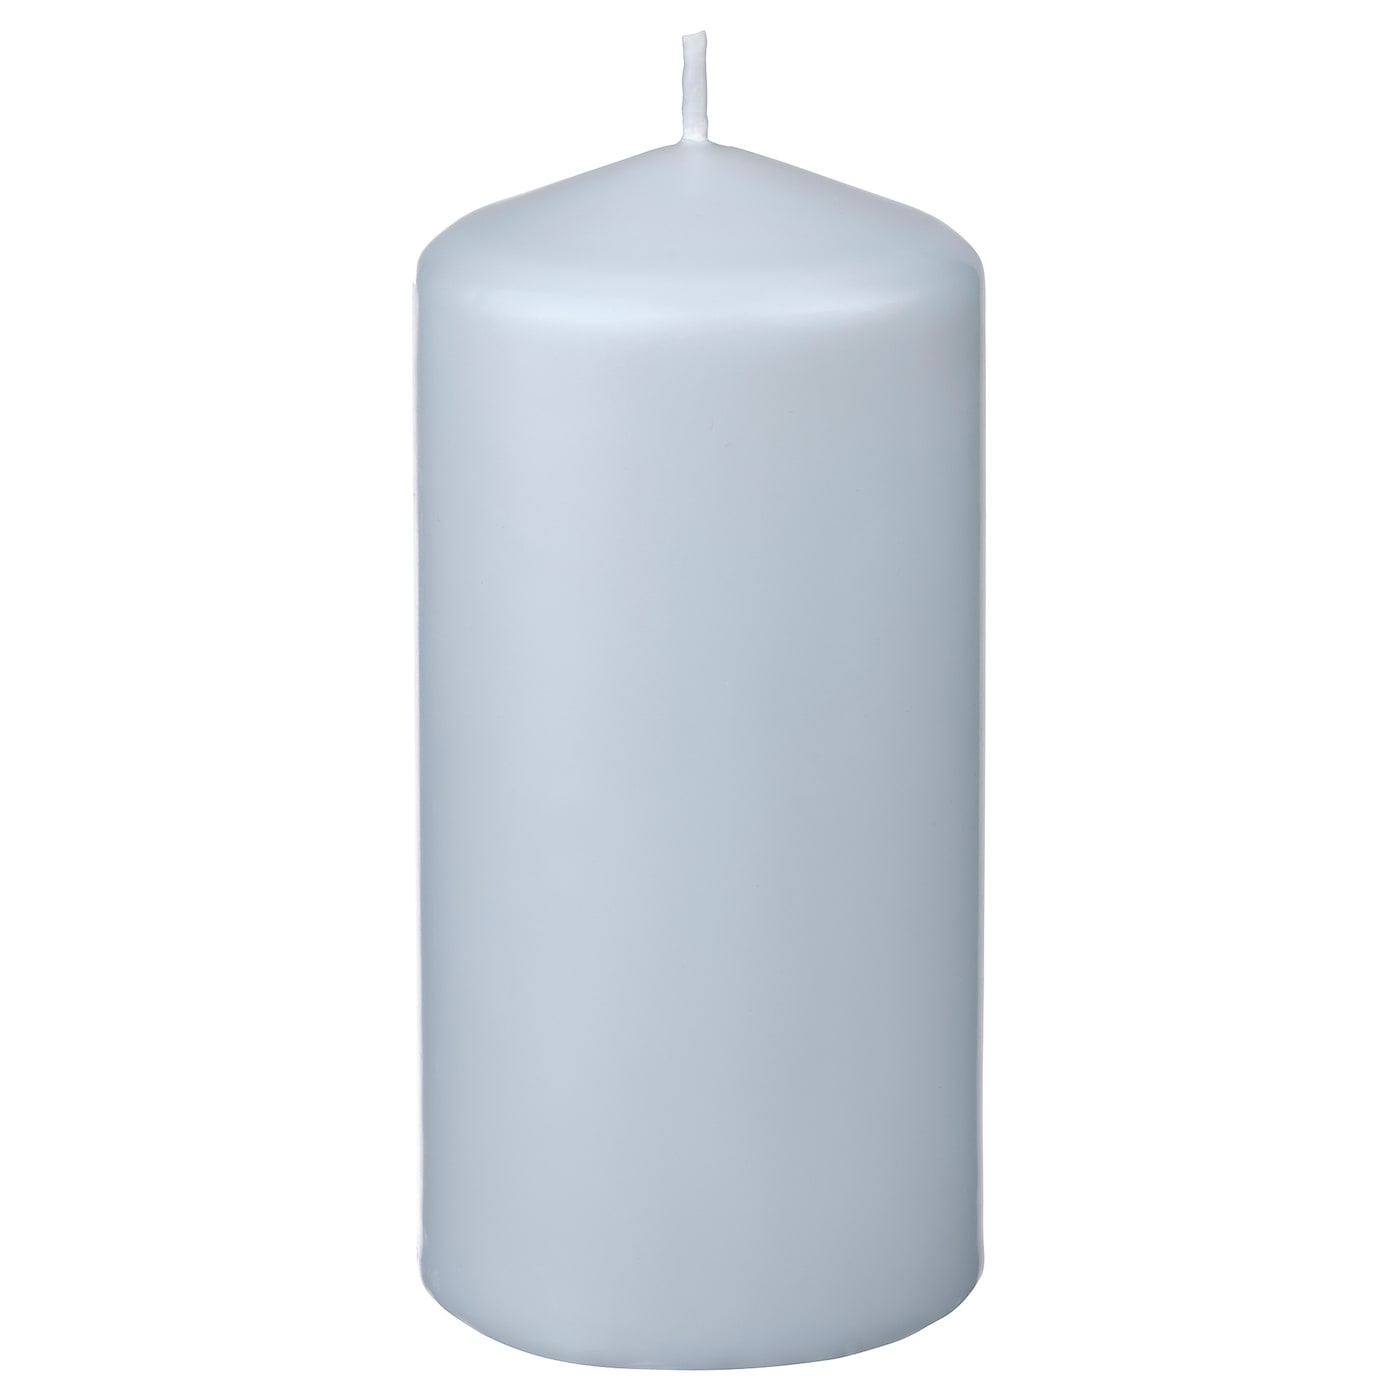 Свеча формовая без запаха - IKEA DAGLIGEN/ДАГЛИГЕН ИКЕА, 14х6,8 см, светло-серый